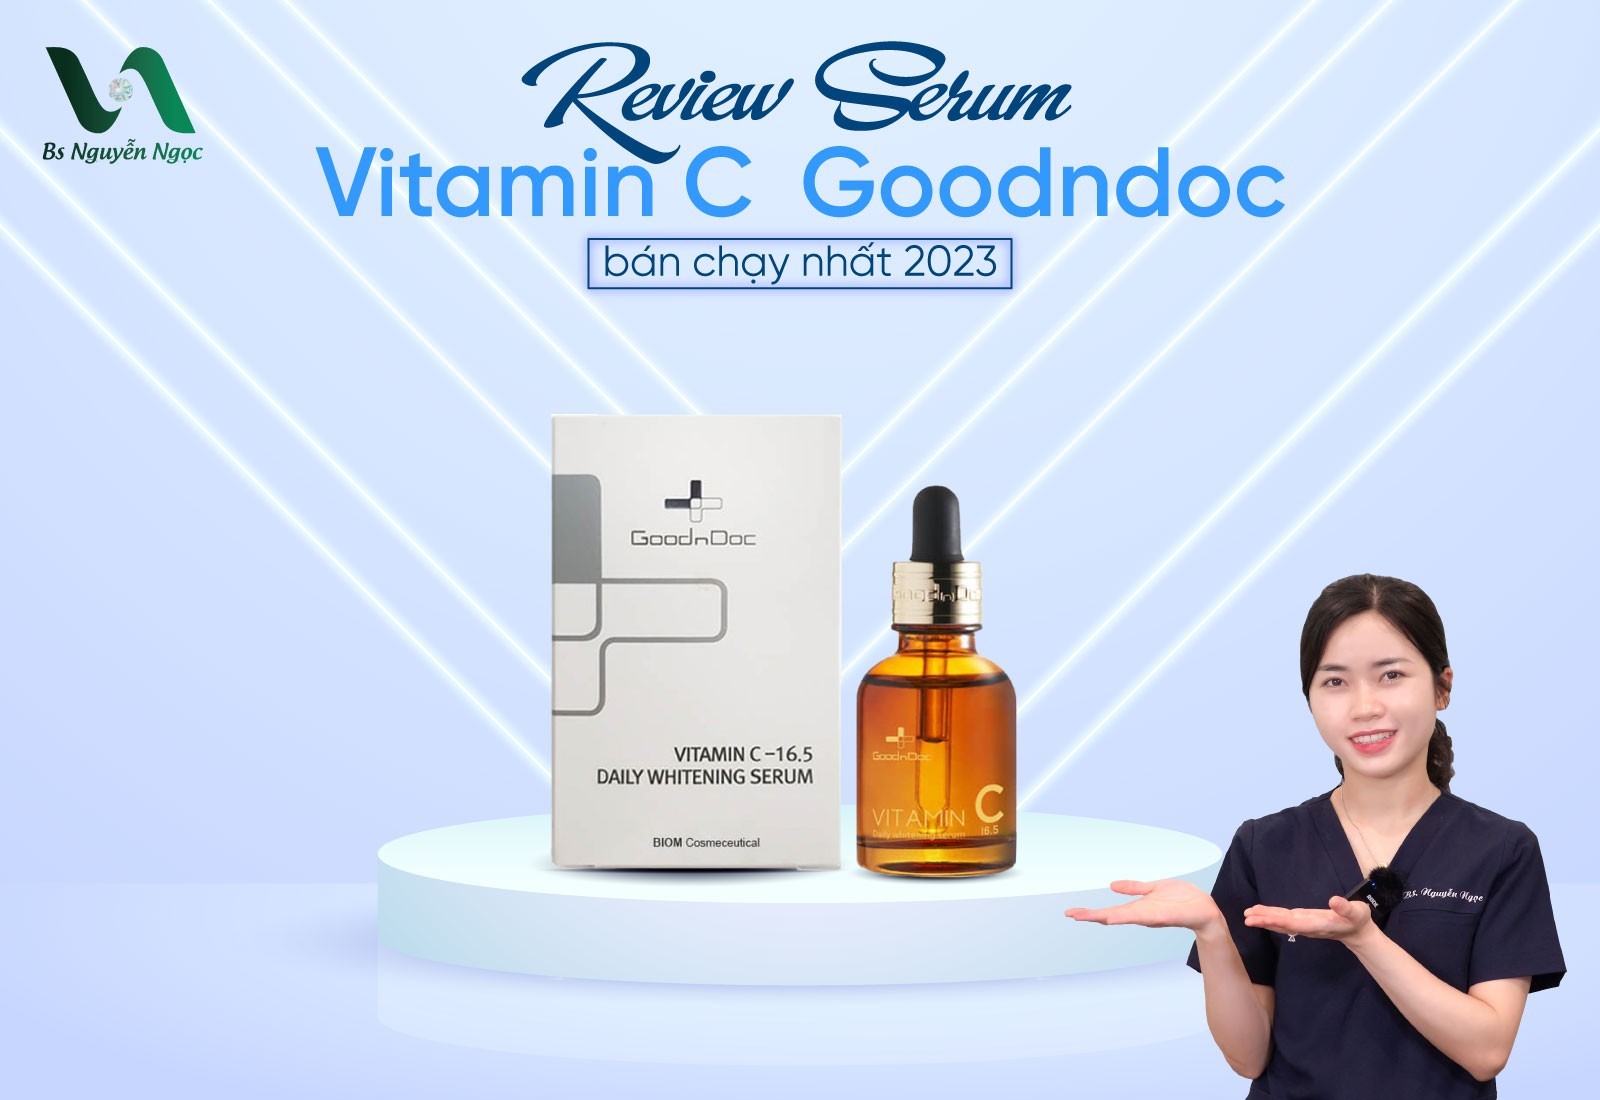 Review Serum Vitamin C Goodndoc bán chạy nhất 2023